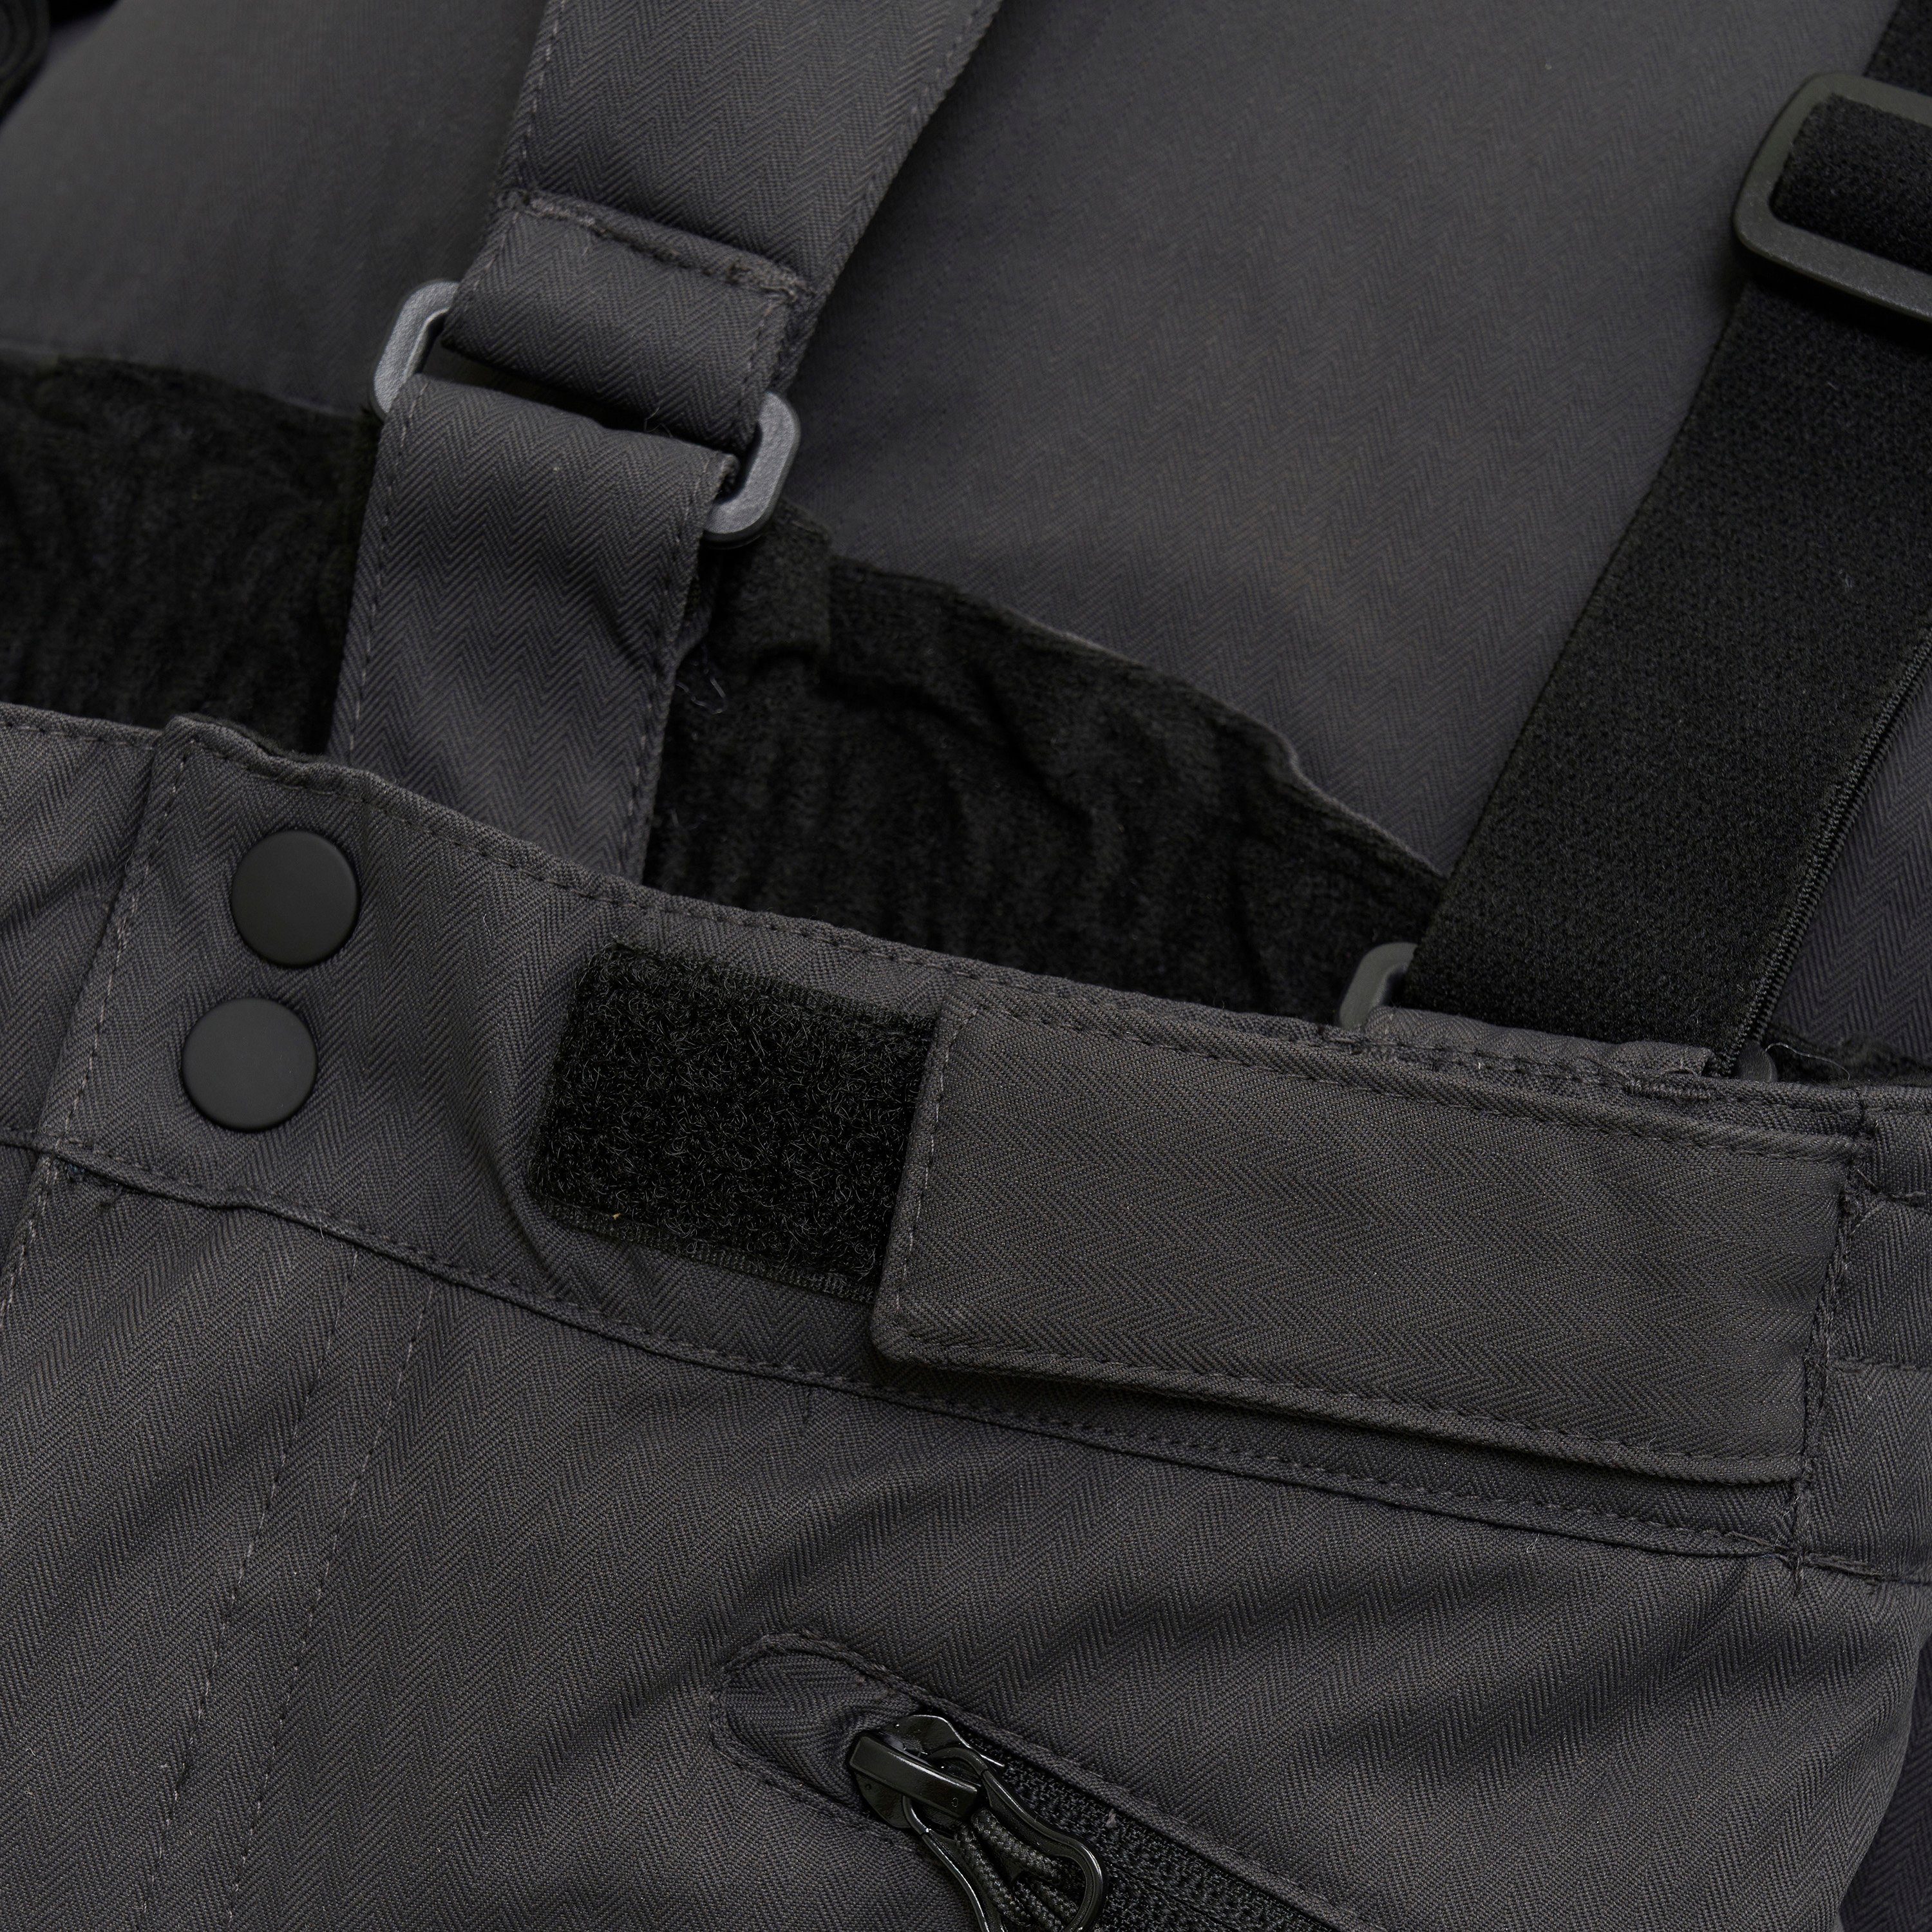 Phantom - Matschhose und Regen- W.Pockets Pants COLOR KIDS Skihose COSki mit Reißverschlusstaschen (161) 5440